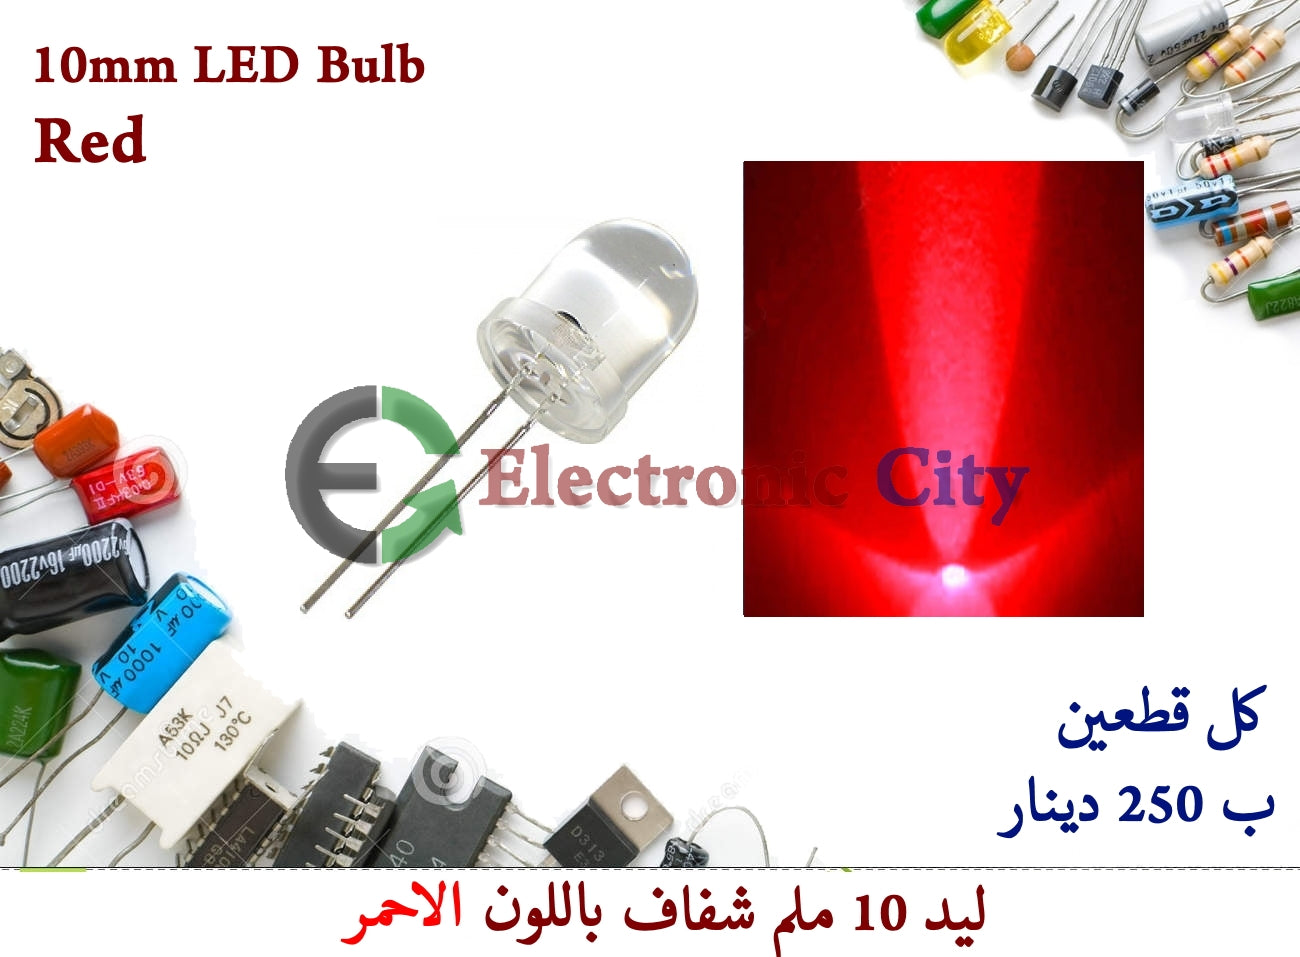 10mm LED Bulb Red